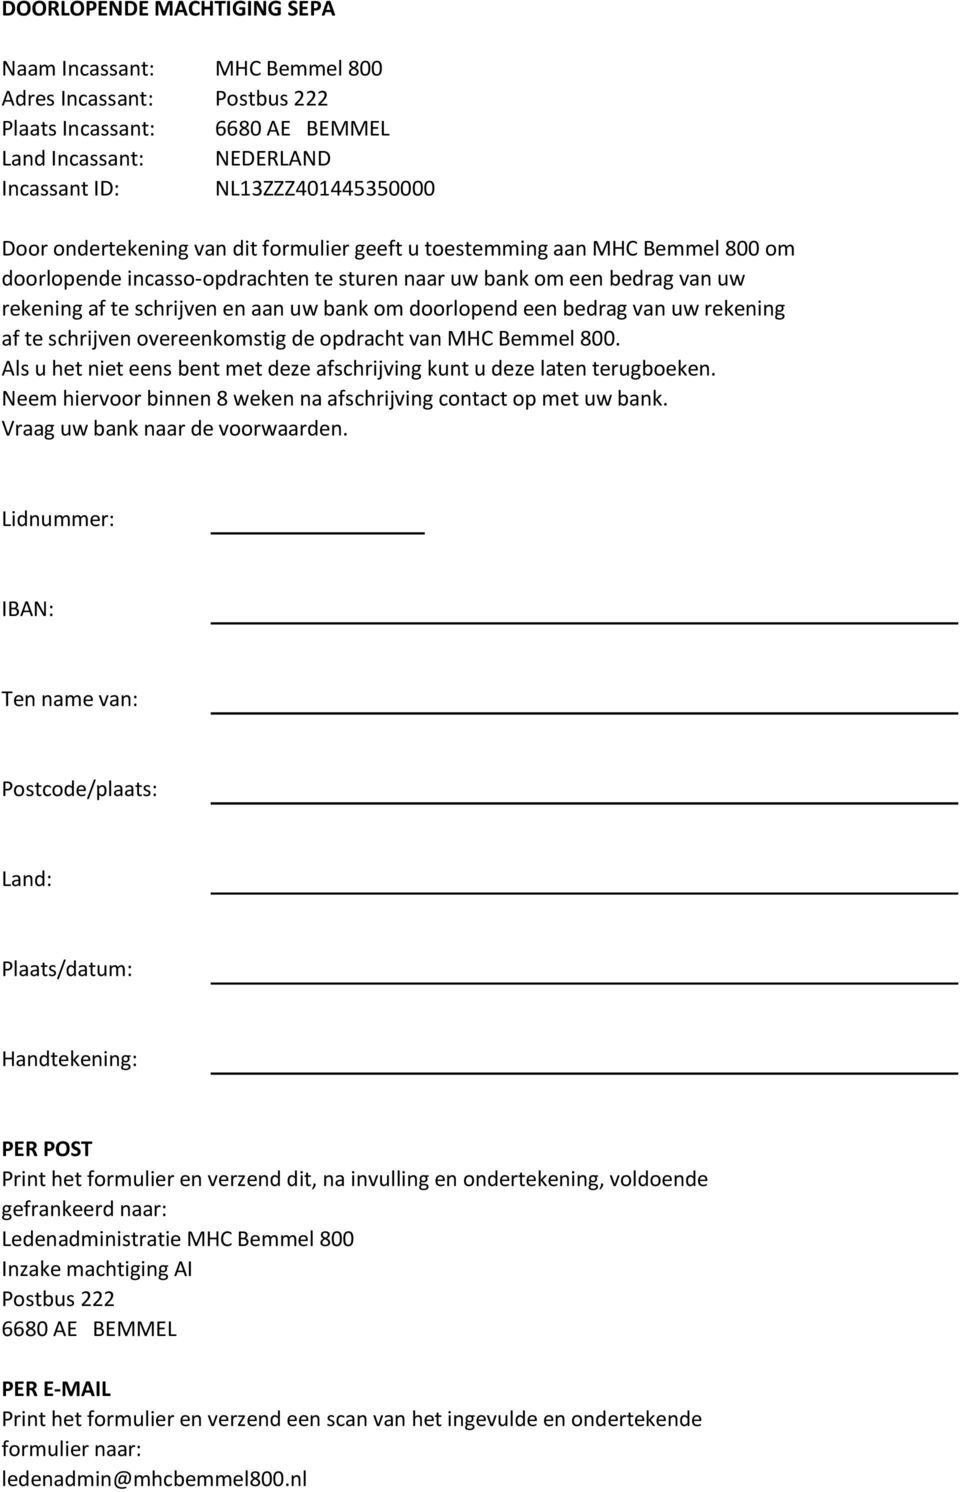 DOORLOPENDE MACHTIGING SEPA - PDF Free Download